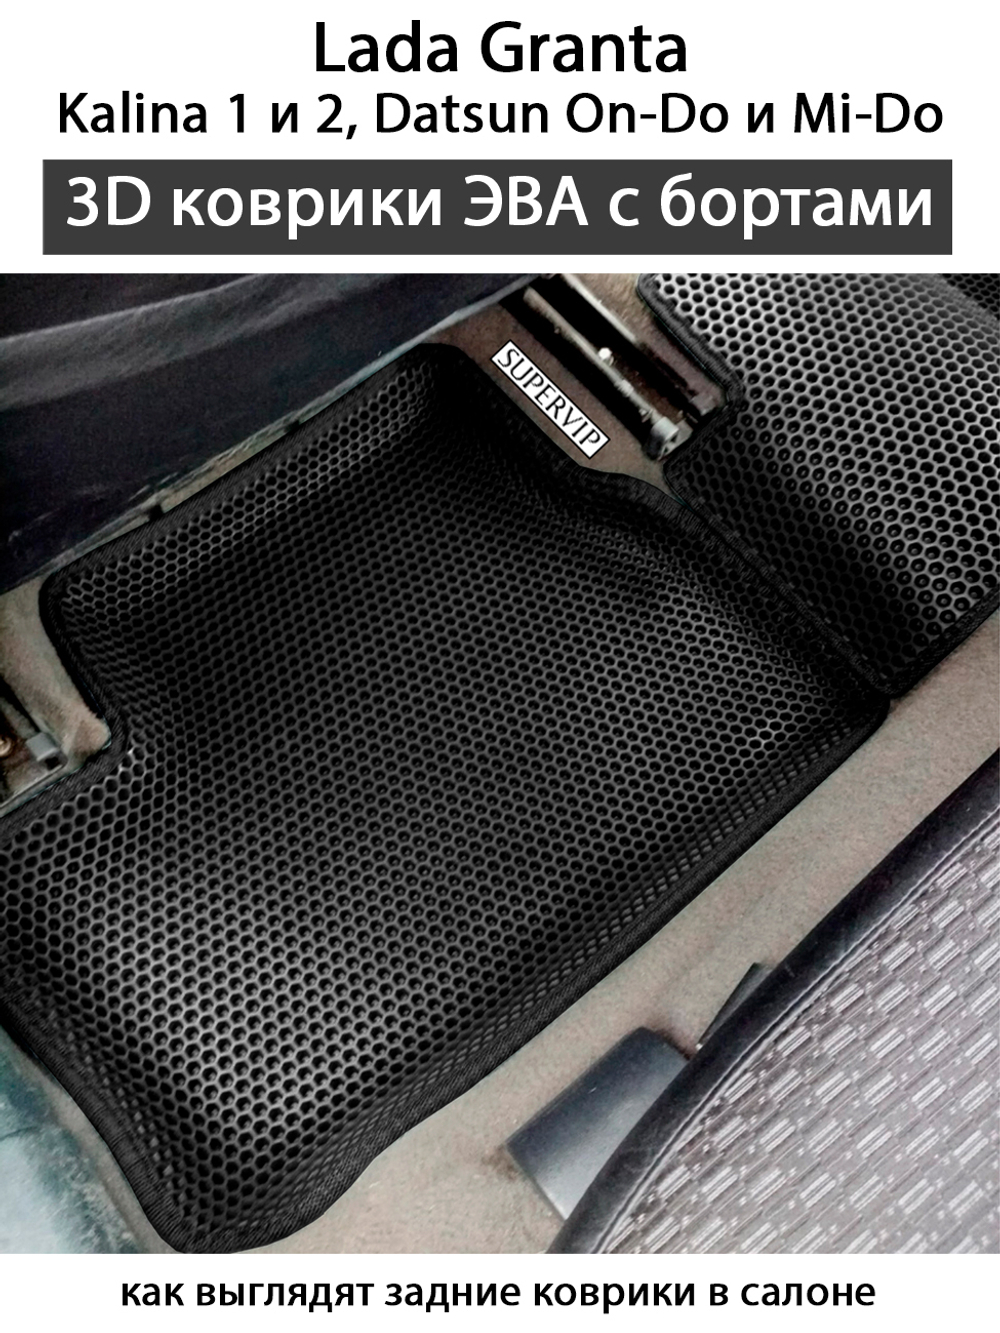 Купить коврики ЕВА с бортами 3D и 5D в Санкт-Петербурге и Москве c быстрым пошивом